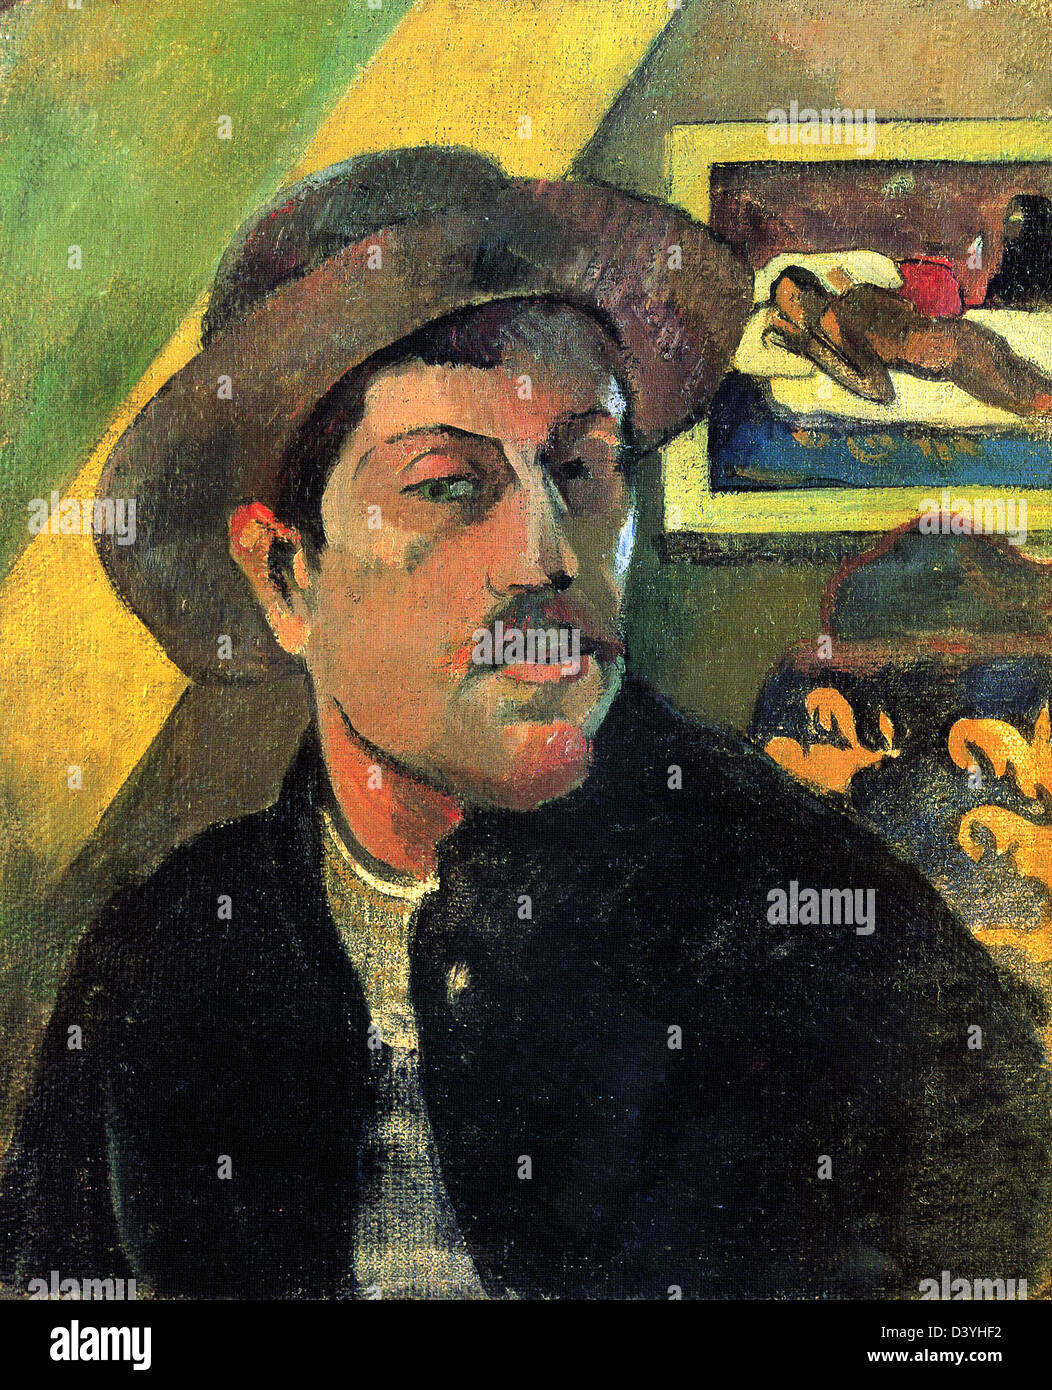 Paul Gauguin, Portrait de l'artiste hat 1893 Huile sur toile. Musée d'Orsay, Paris Banque D'Images